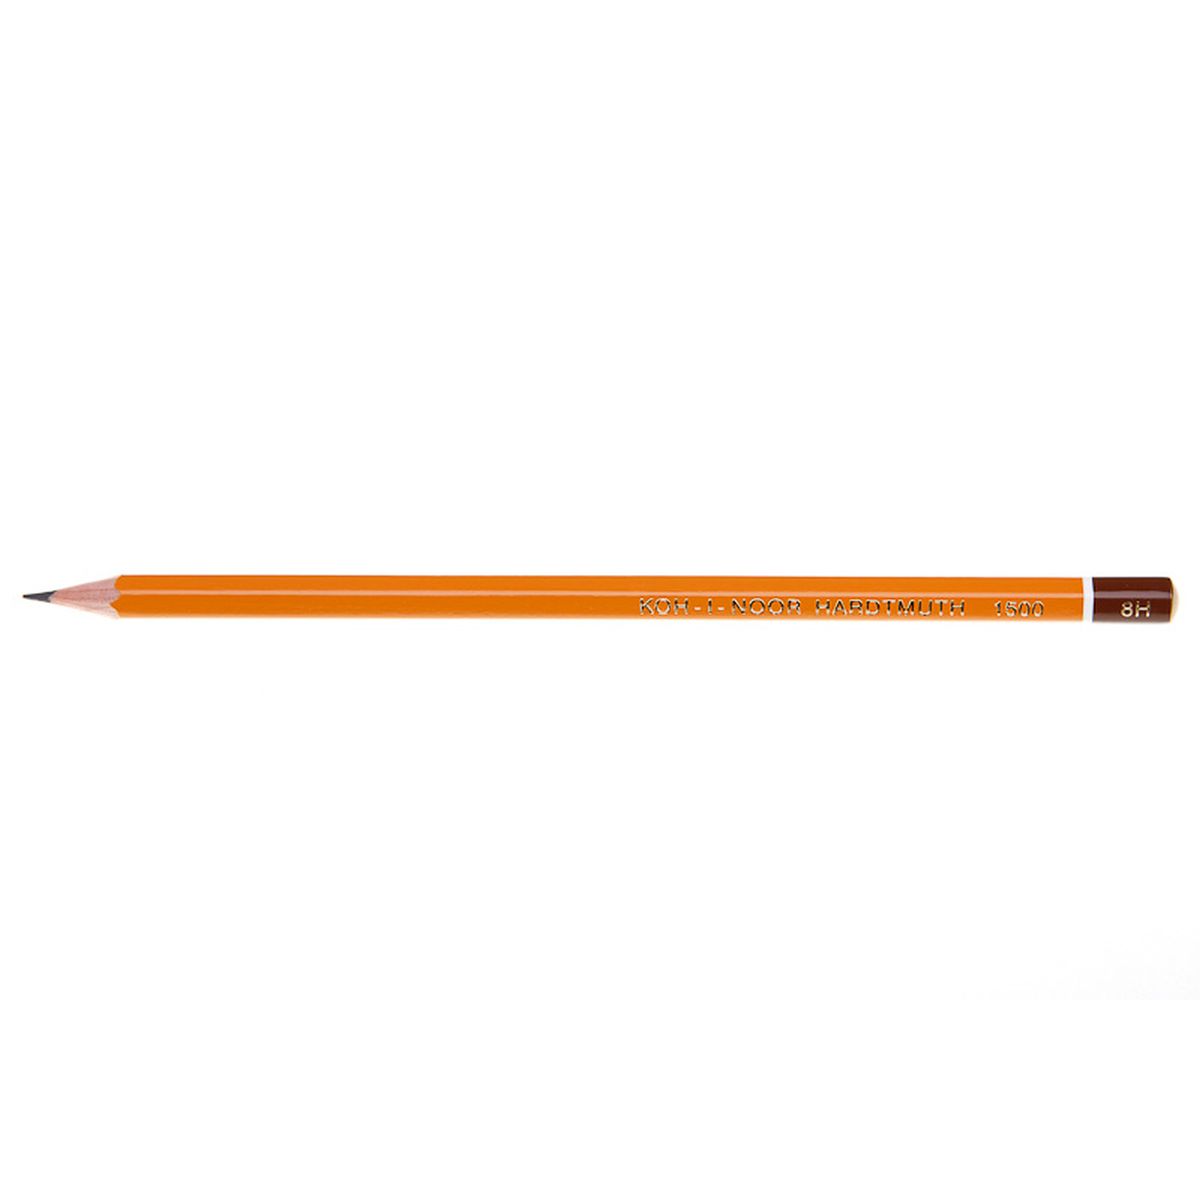 Ołówek Koh-I-Noor 1500 8H